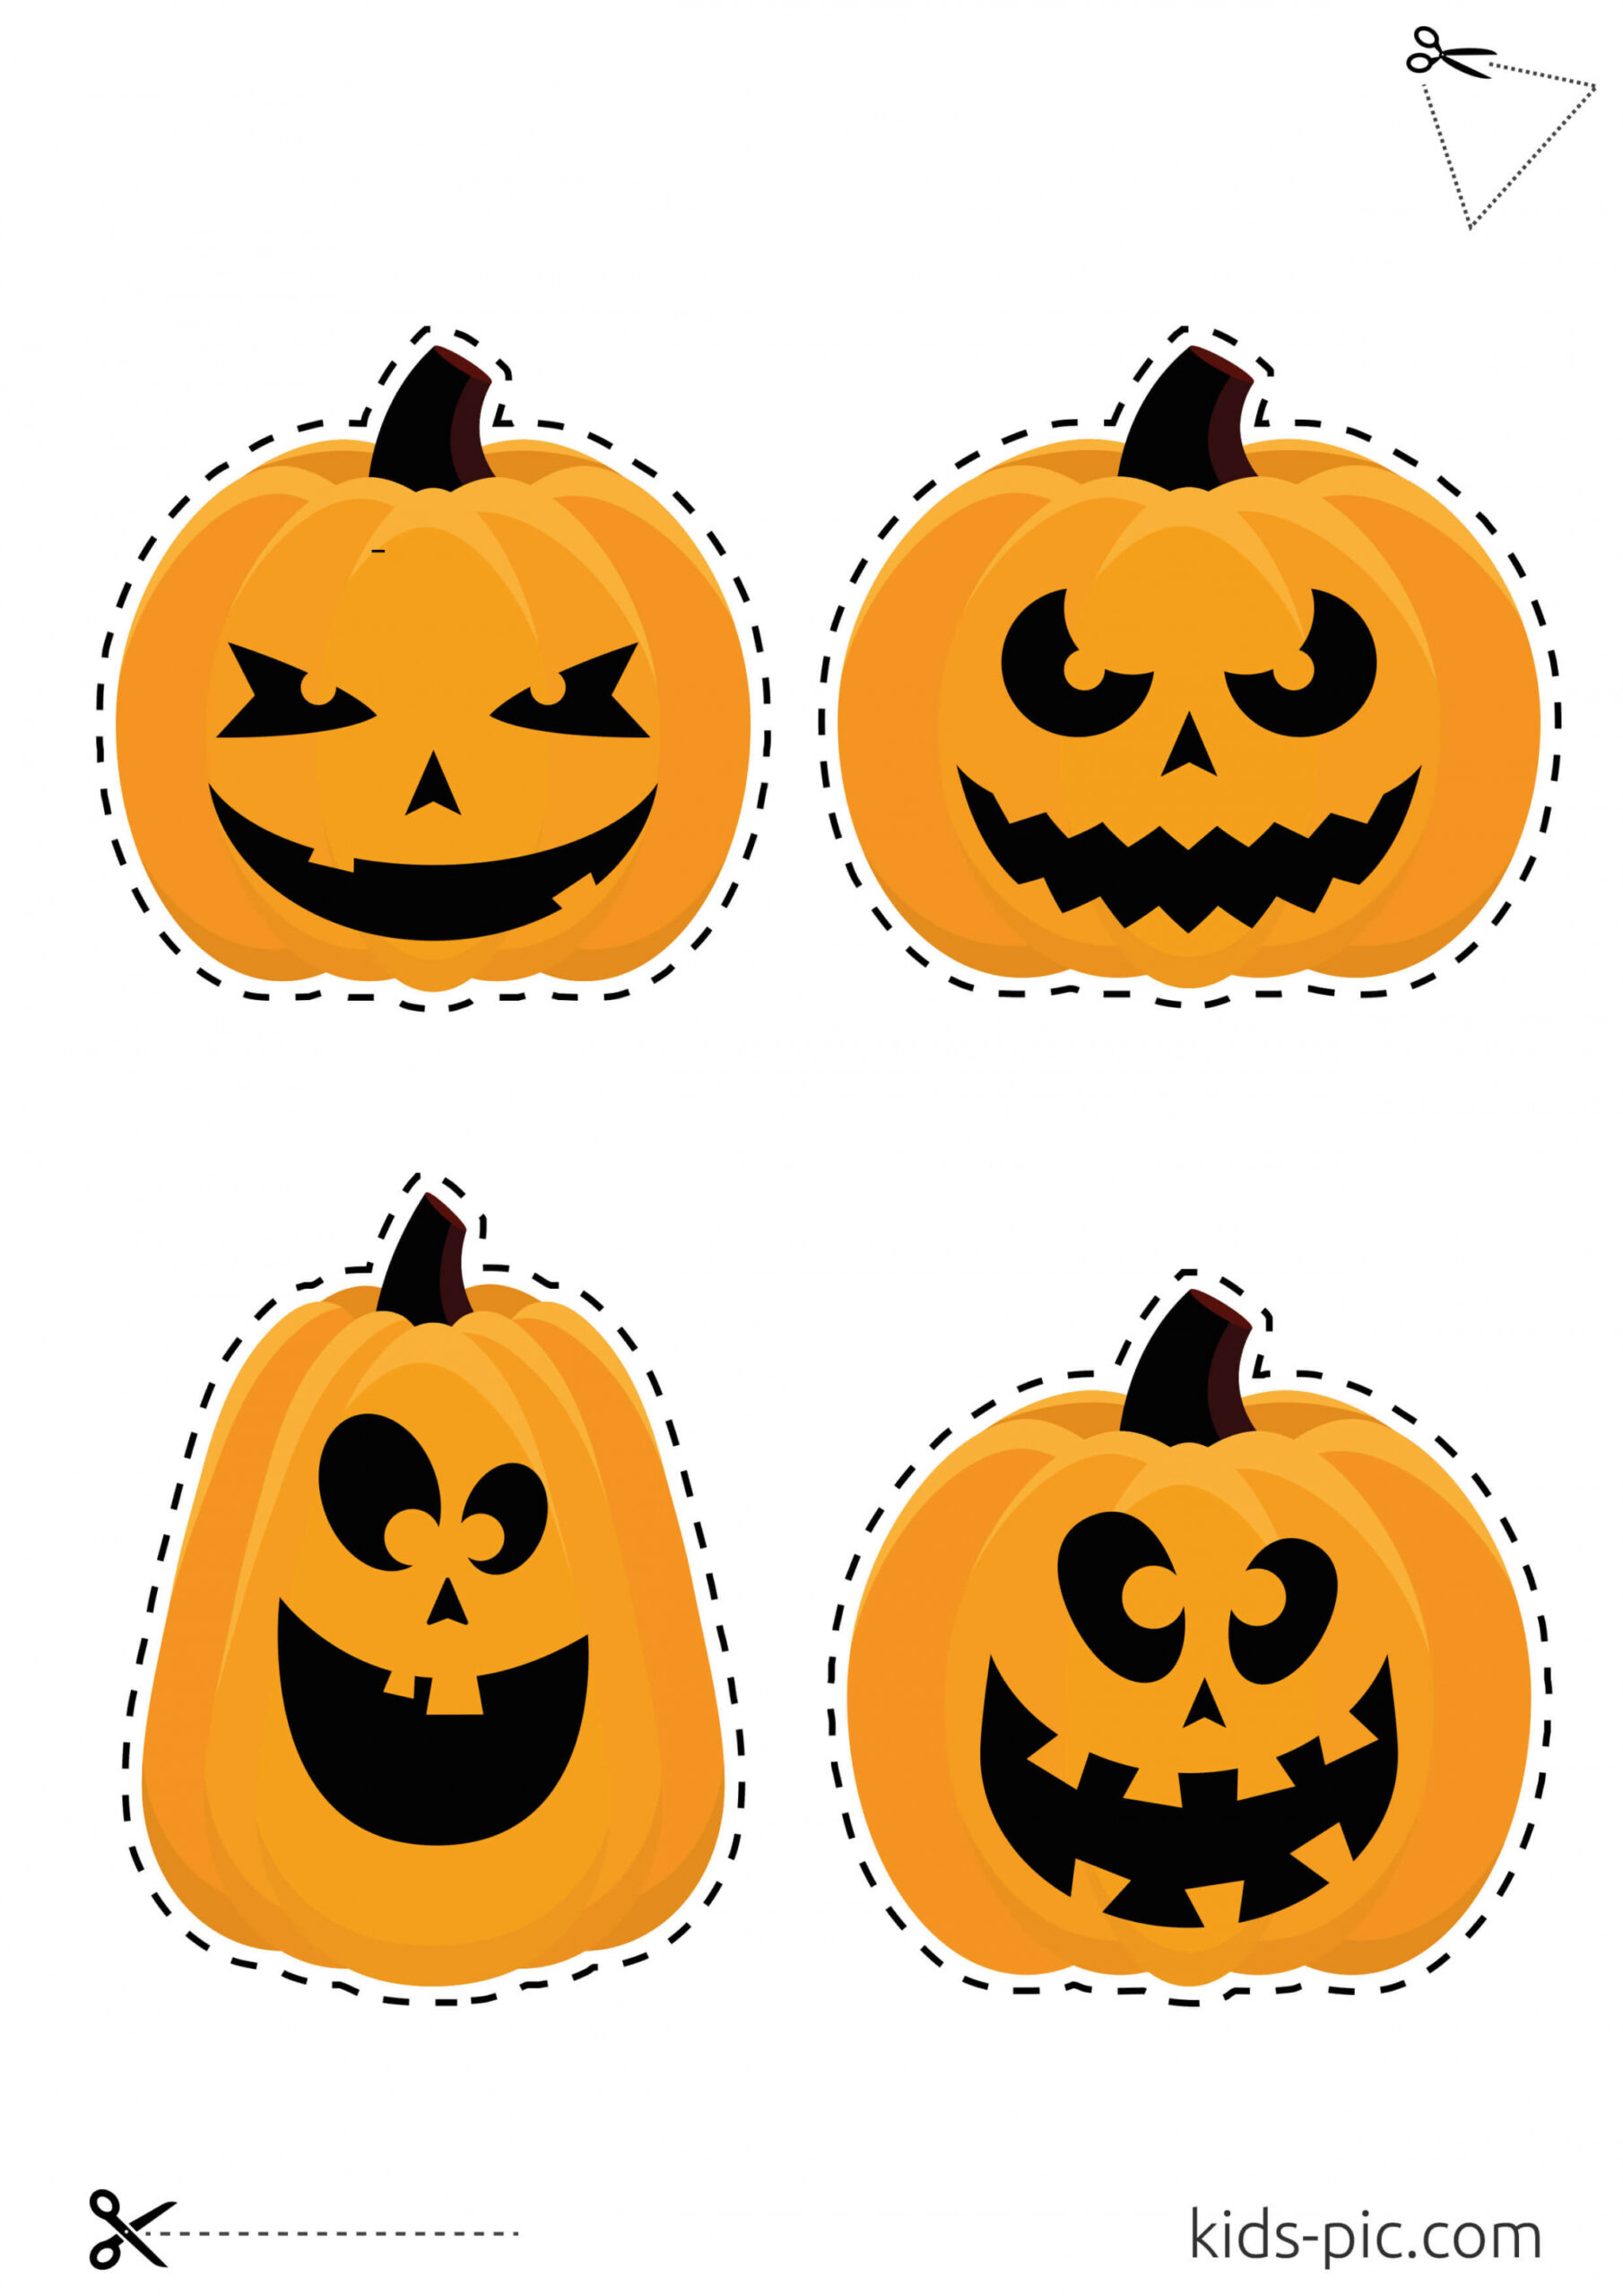 Halloween Pumpkin Cut Out Template  Kids-Pic - Pumpkin Print Out